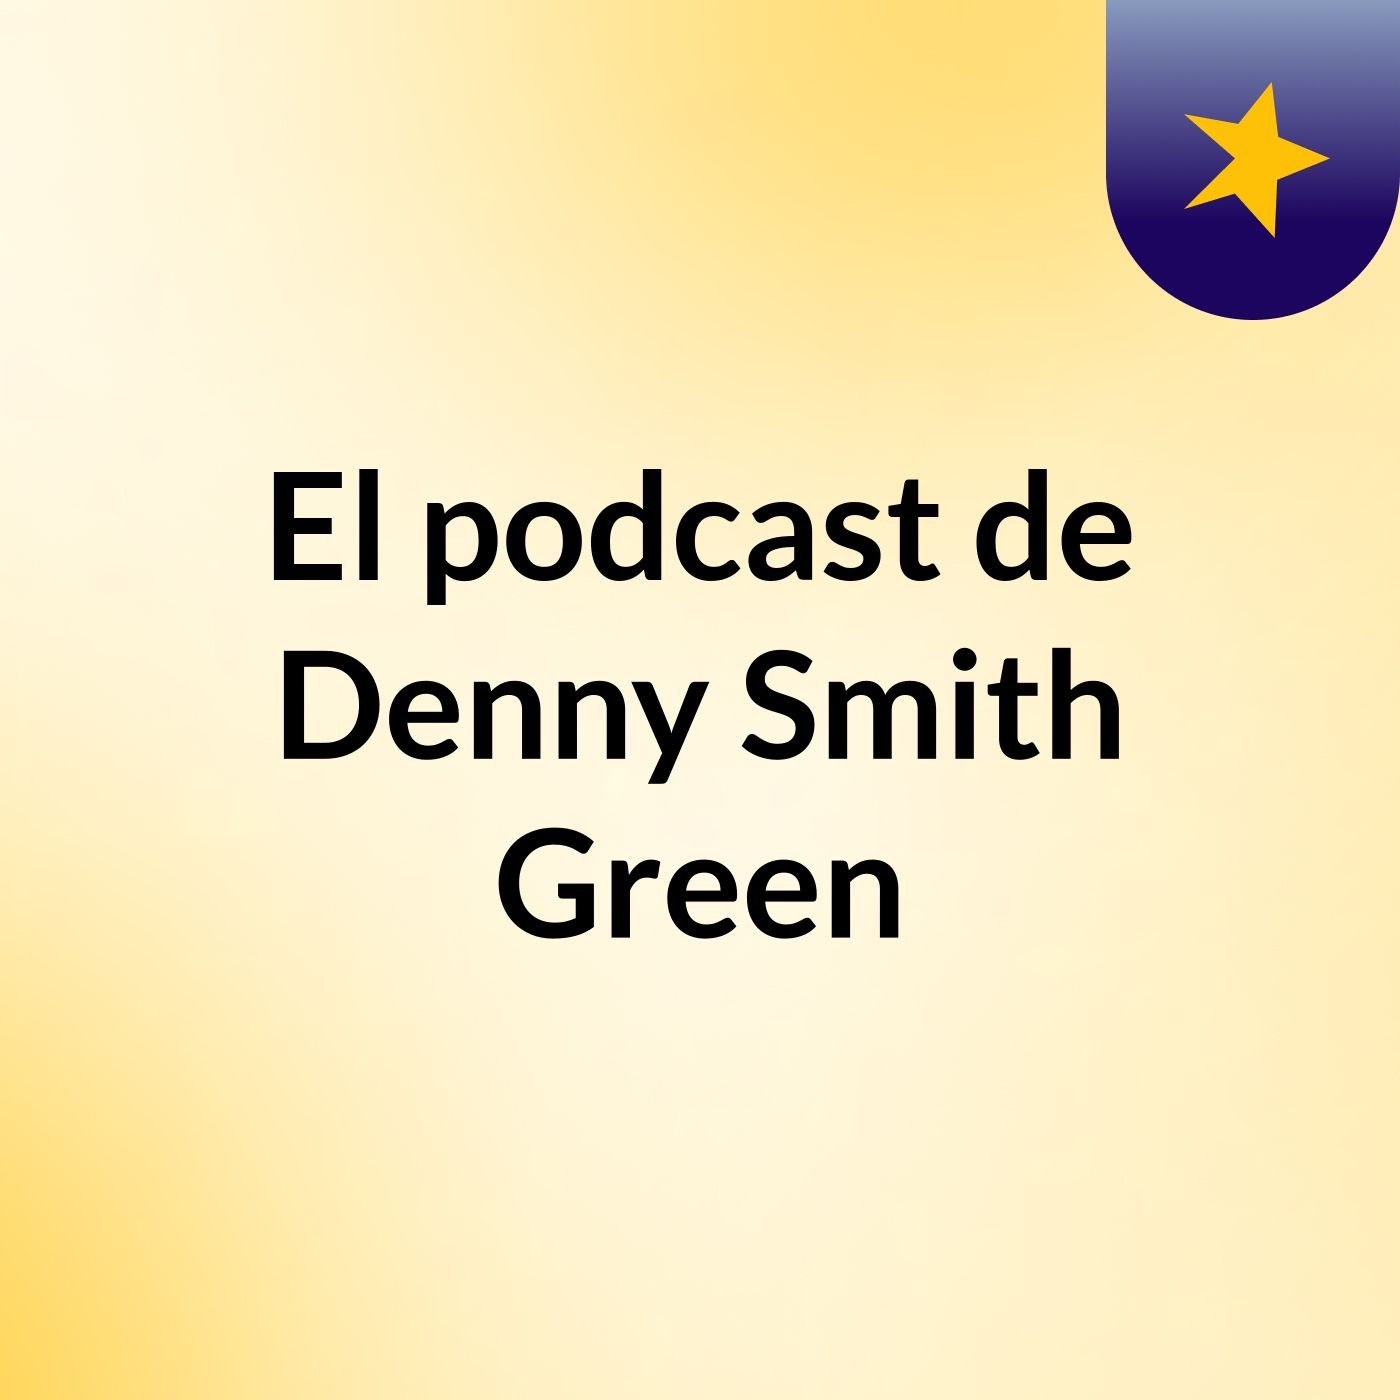 El podcast de Denny Smith Green